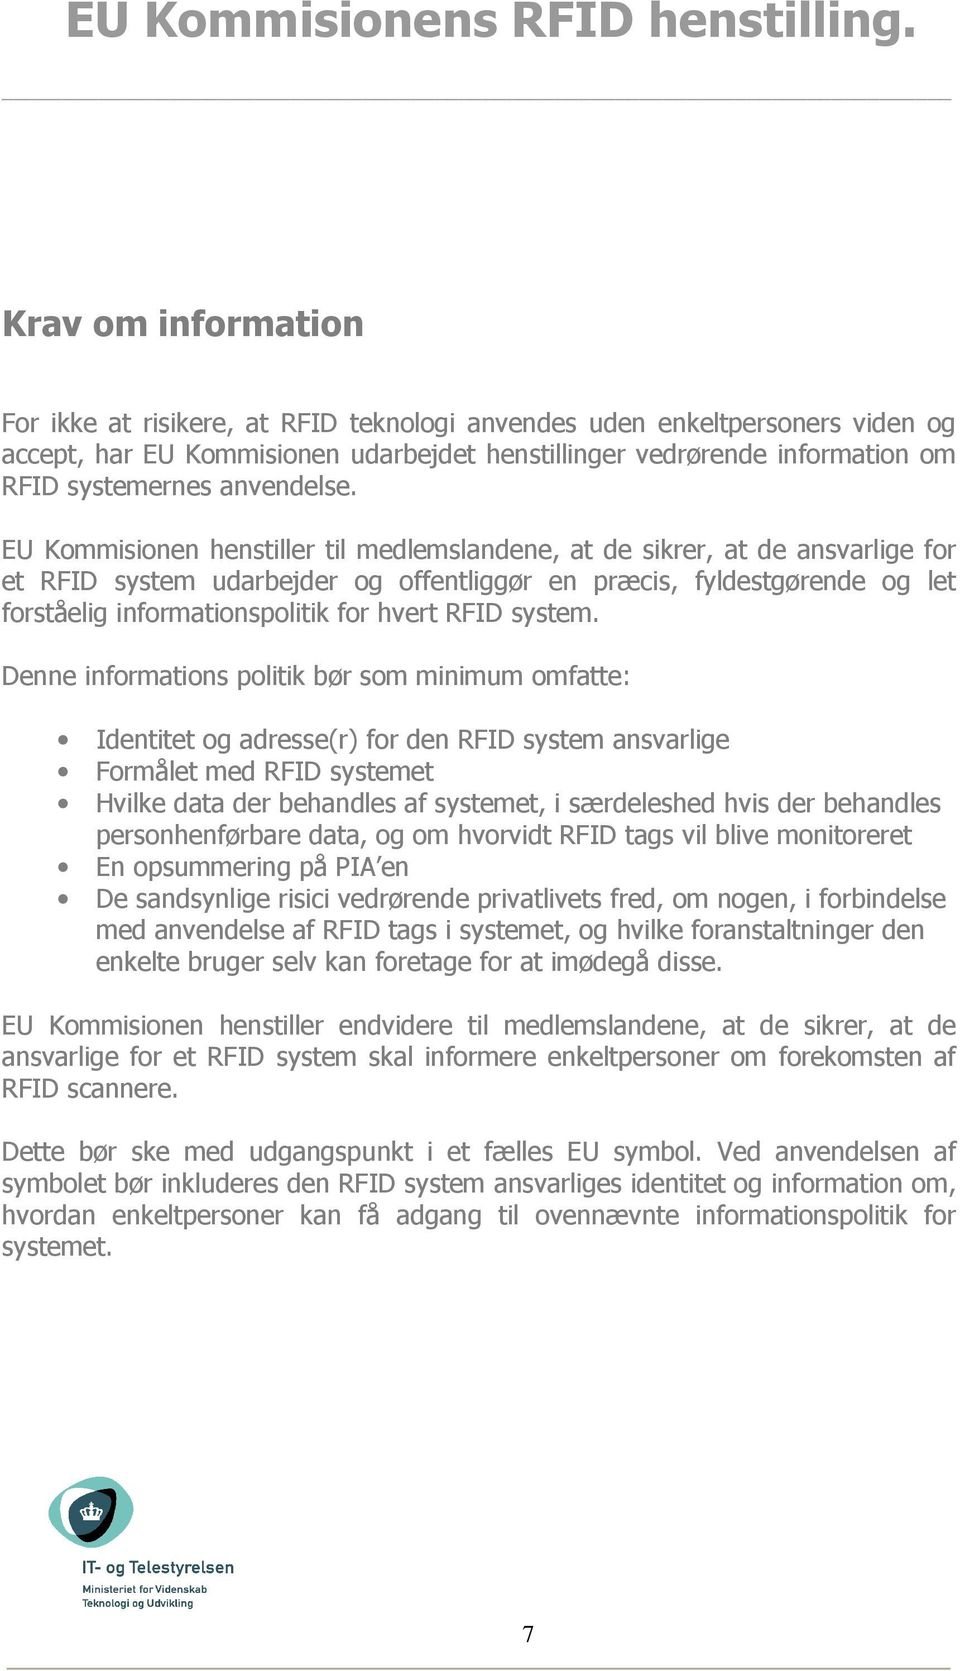 EU Kommisionen henstiller til medlemslandene, at de sikrer, at de ansvarlige for et RFID system udarbejder og offentliggør en præcis, fyldestgørende og let forståelig informationspolitik for hvert